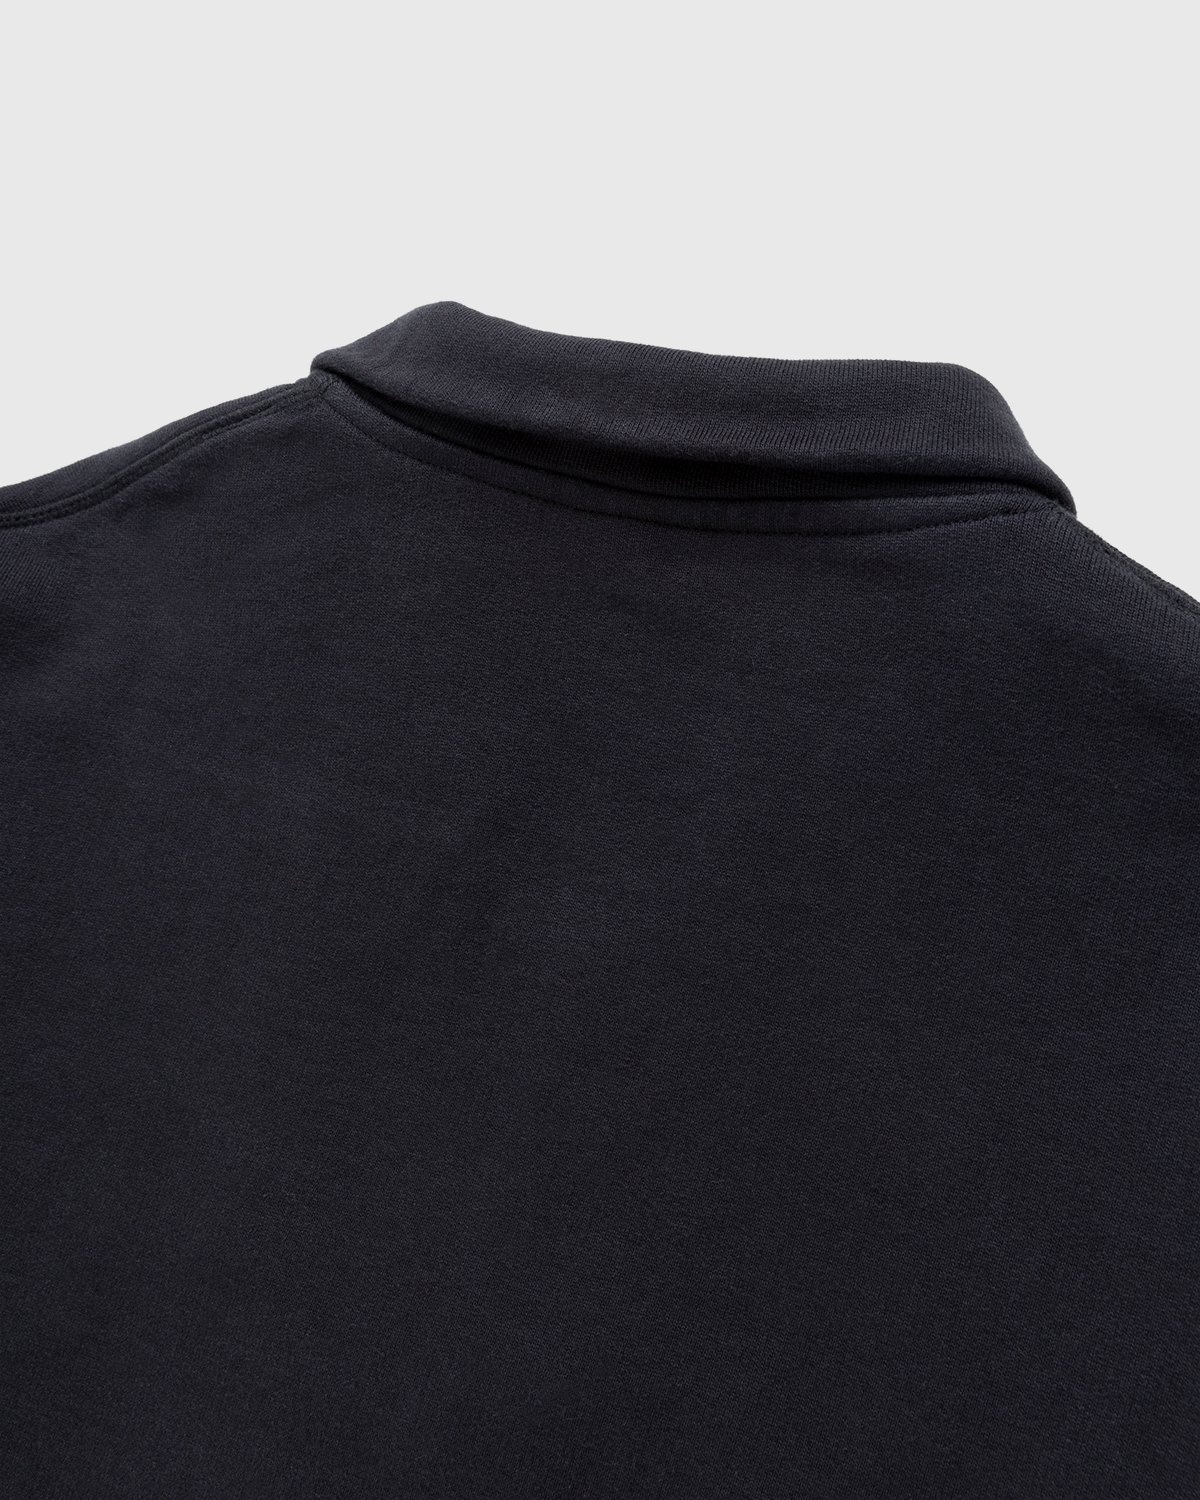 Highsnobiety – Zip Mock Neck Staples Fleece Black - Sweats - Black - Image 5